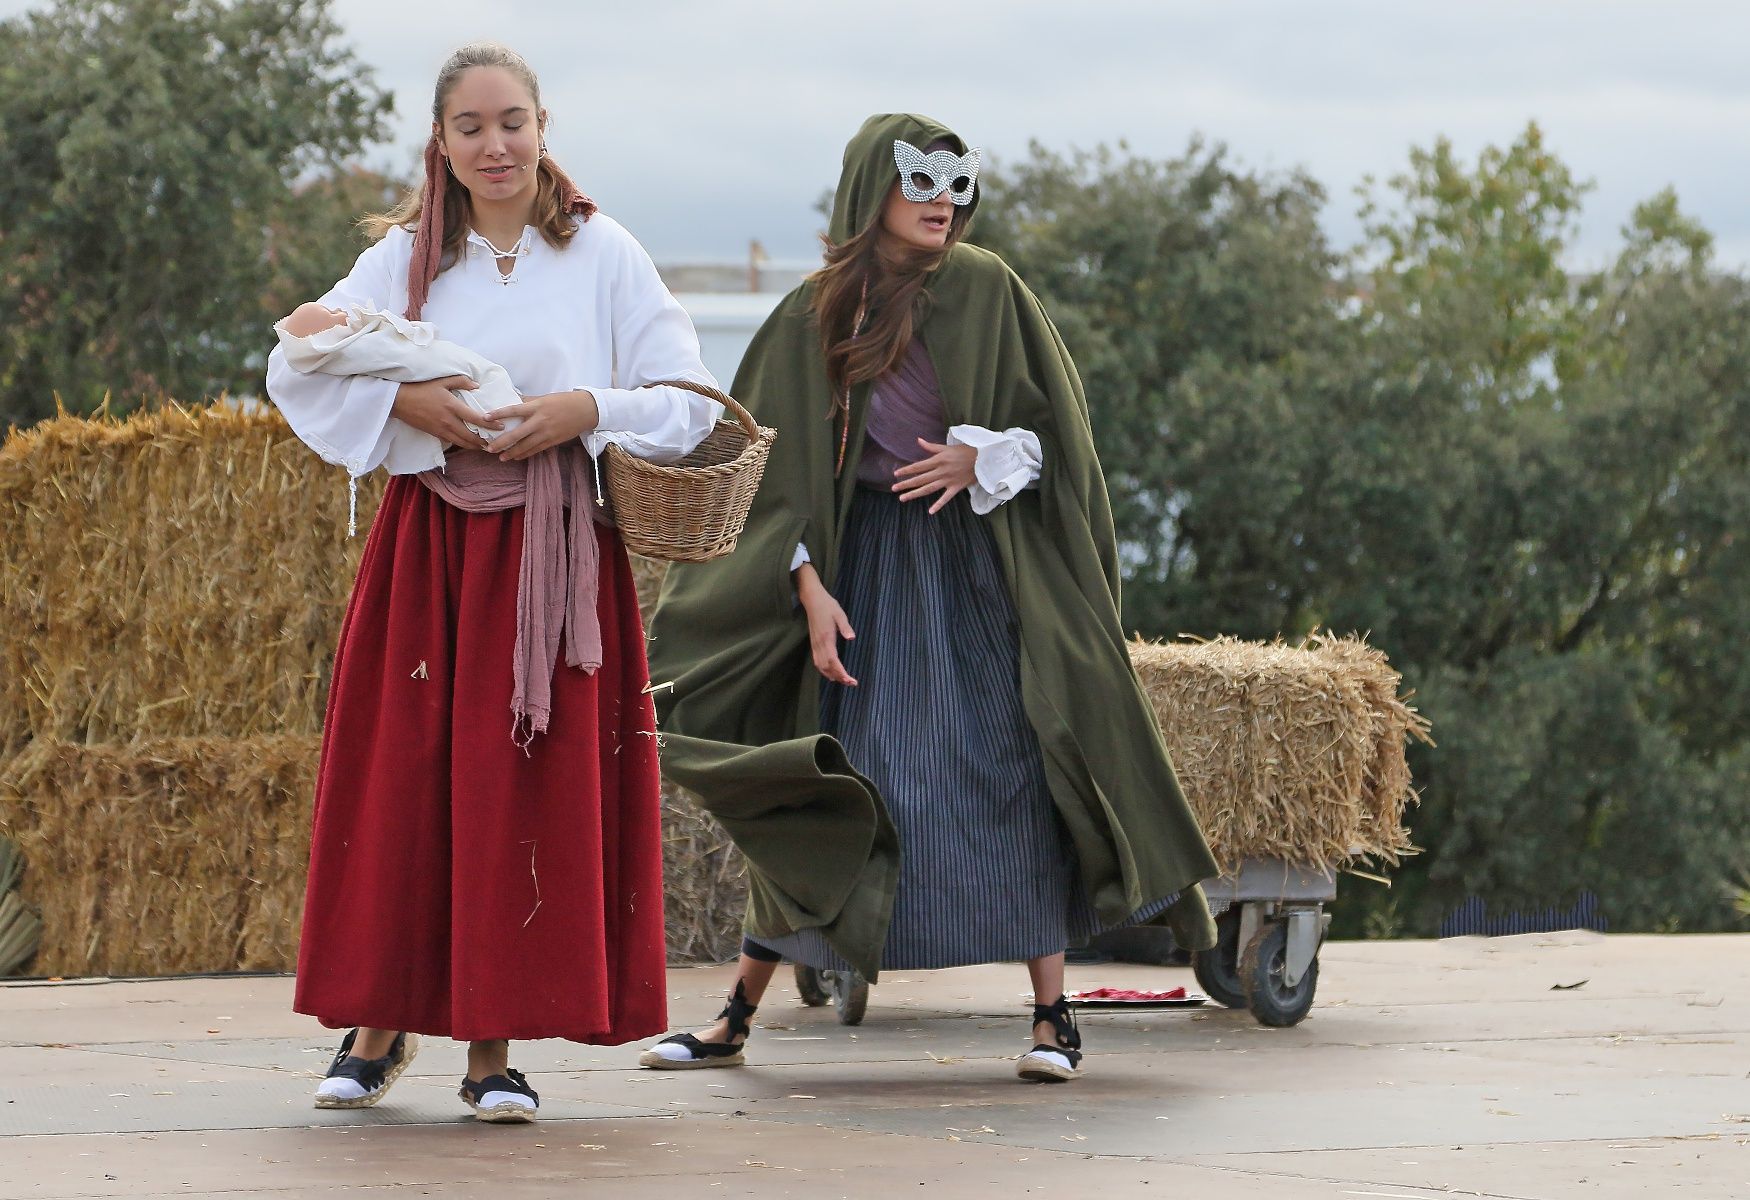 La Fira de les Bruixes de Sant Feliu Sasserra, en fotos